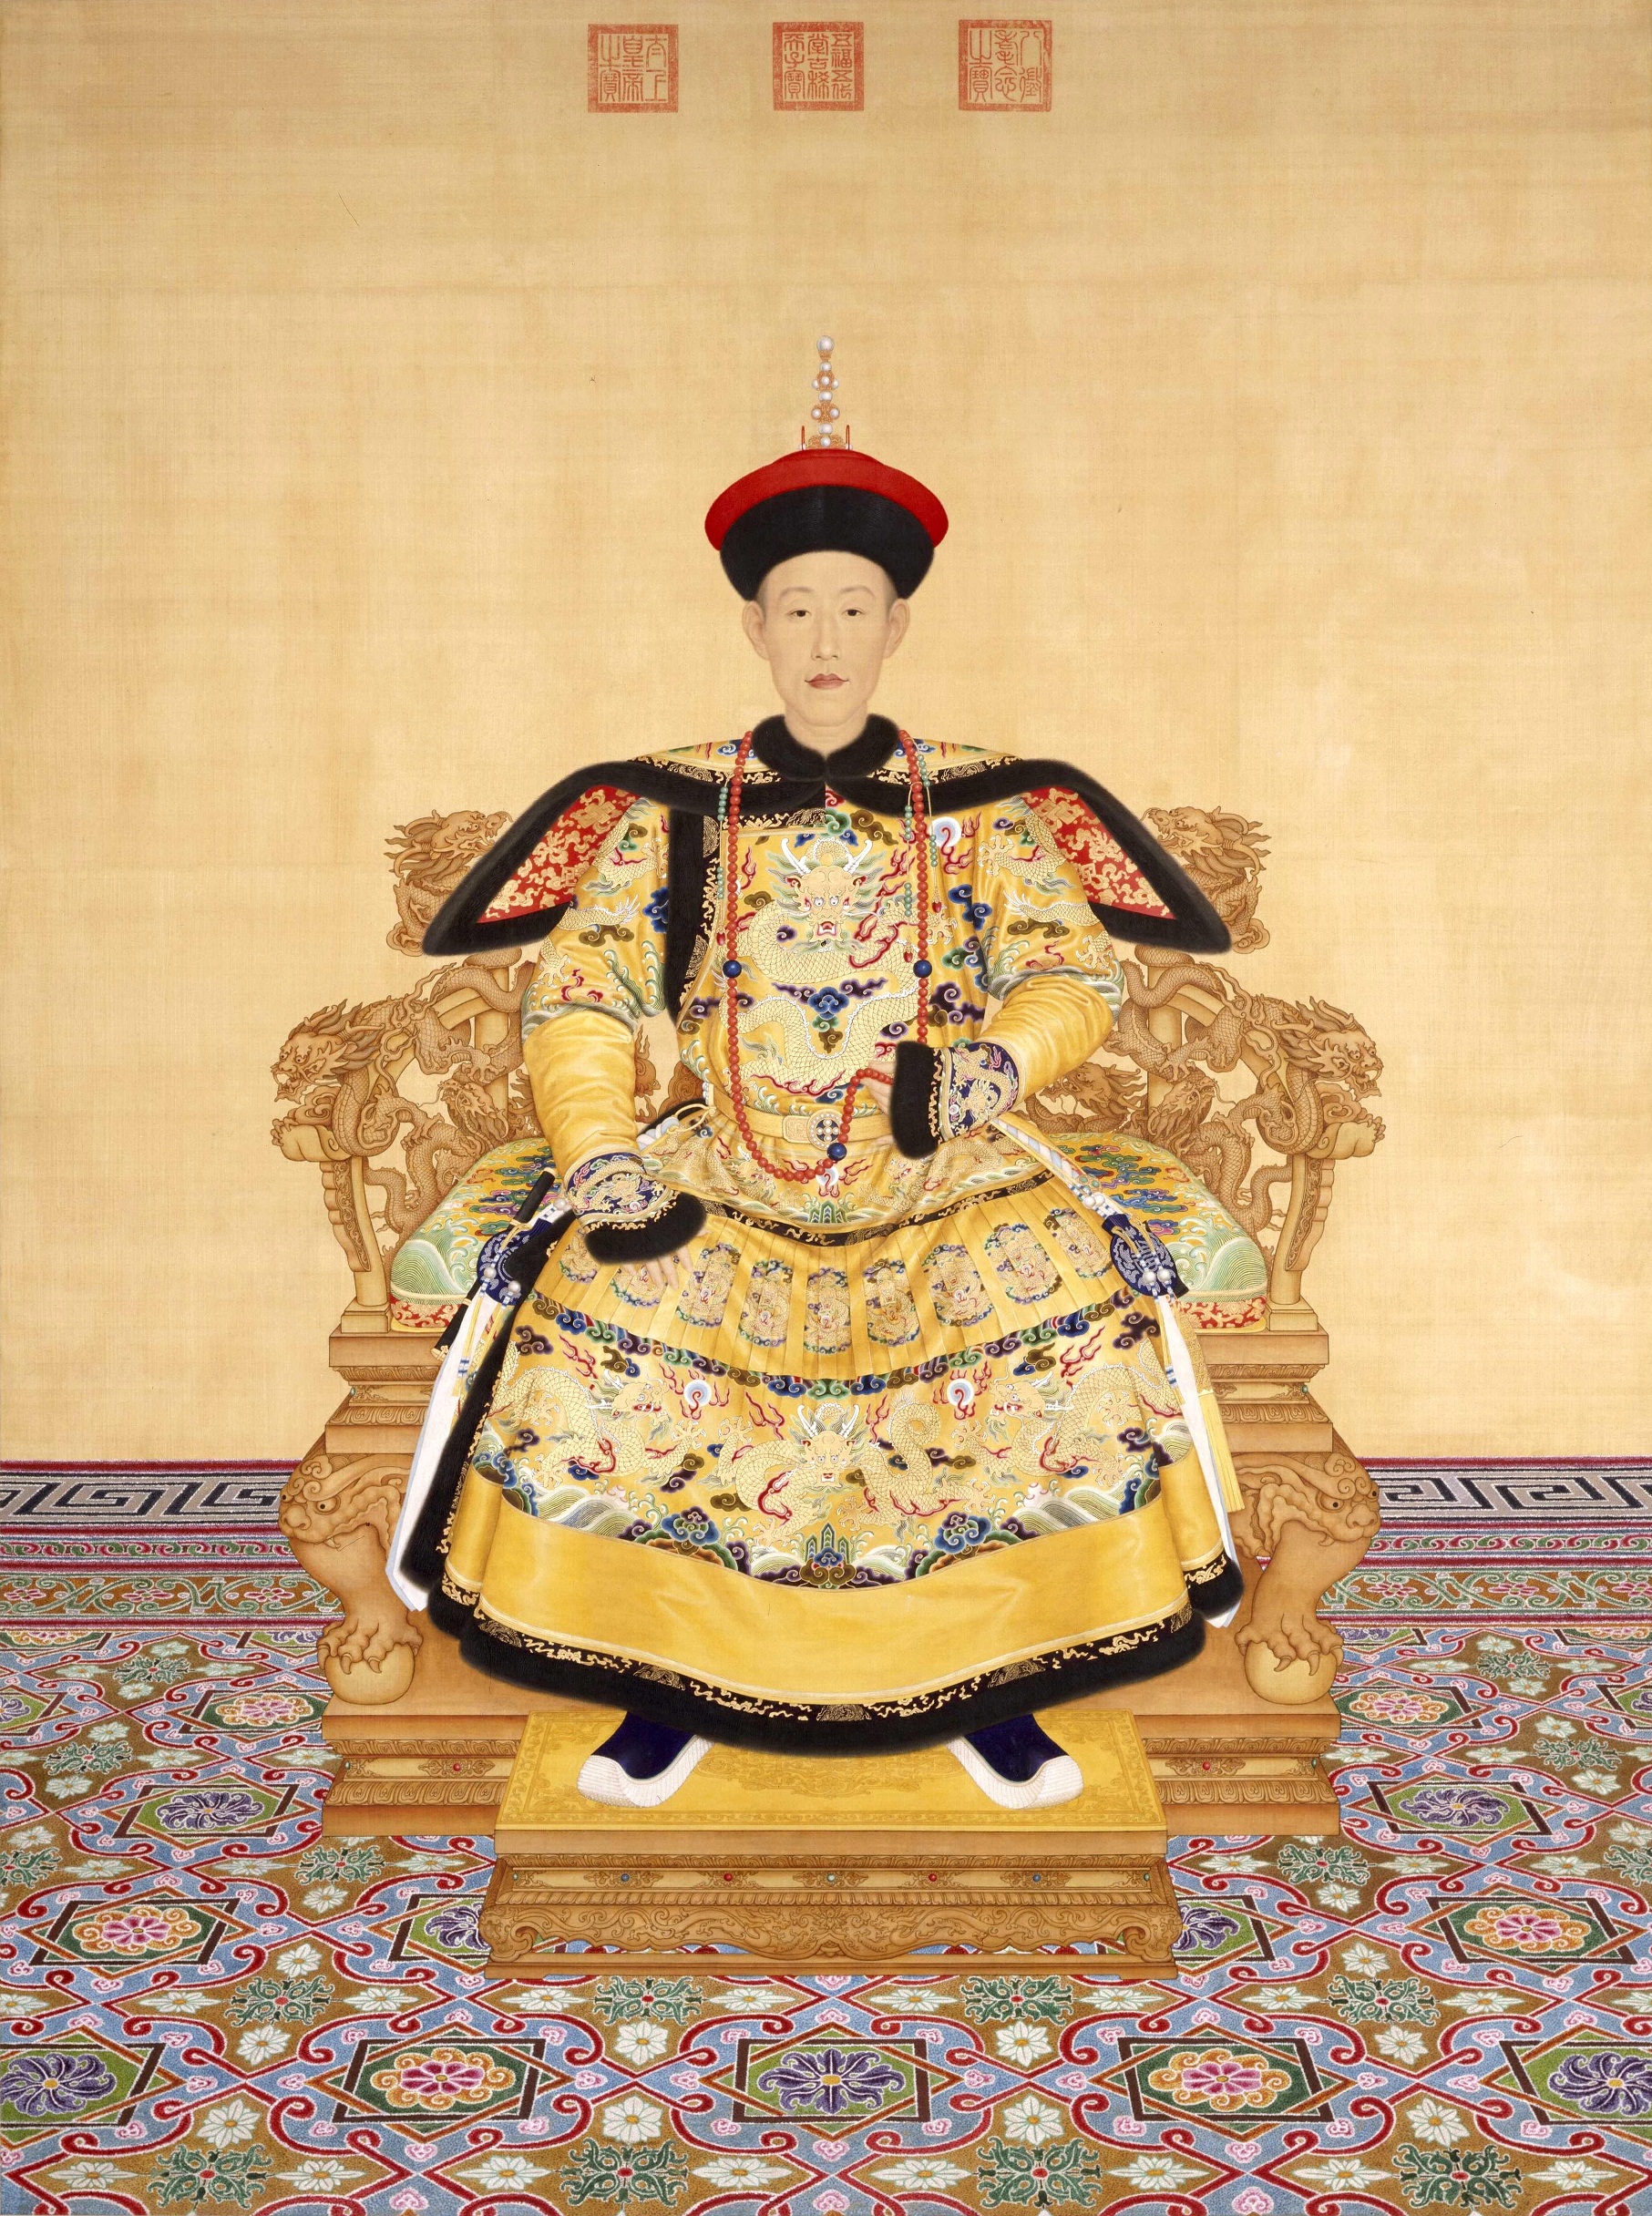 清朝皇室有很多收藏家，乾隆帝是典型的一位，宝贝都藏在三希堂